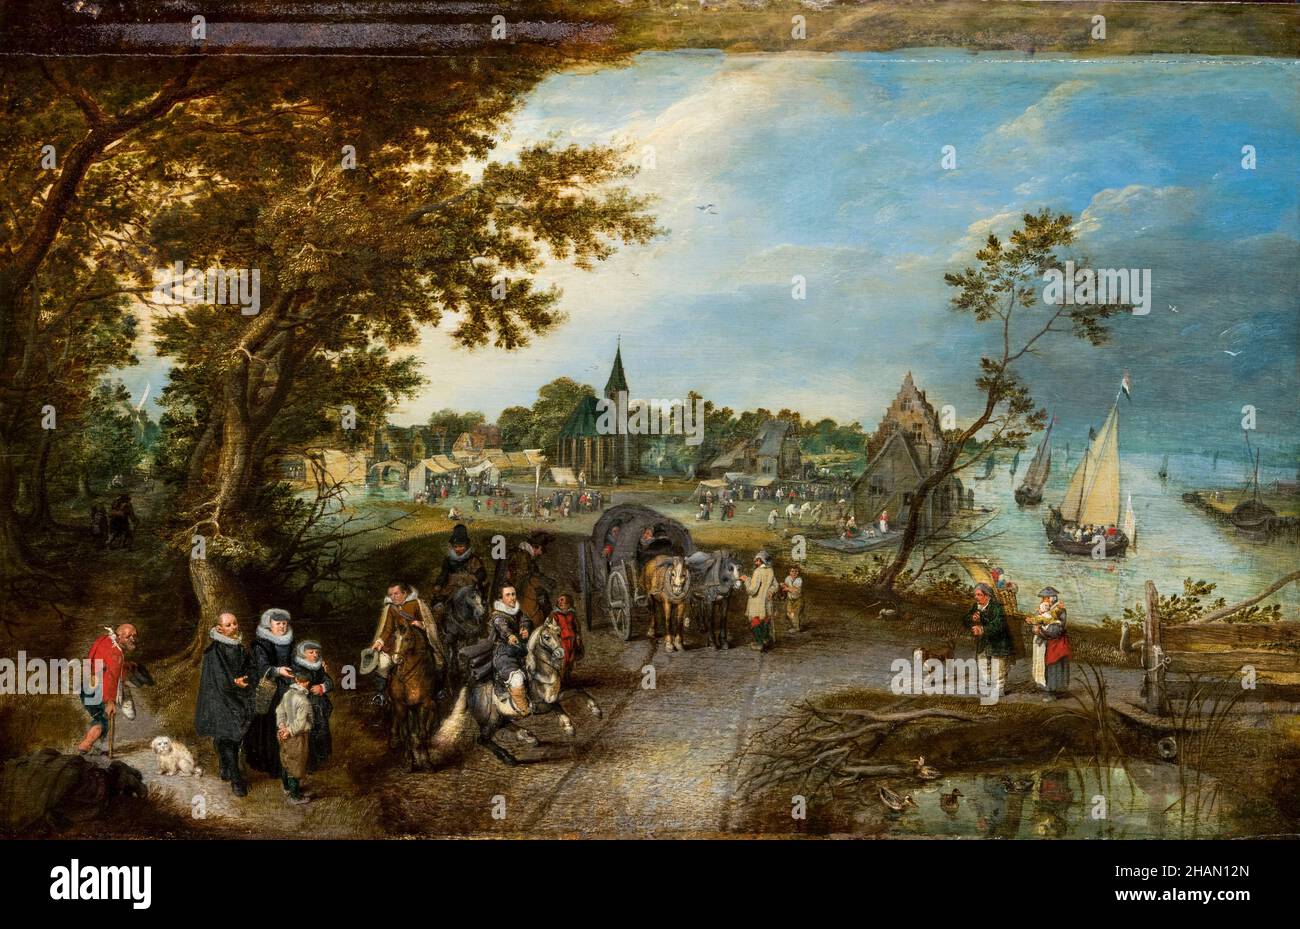 Paysage avec des figures et une foire de village (Village Kermesse), peinture par Adriaen van de Venne, 1615 Banque D'Images